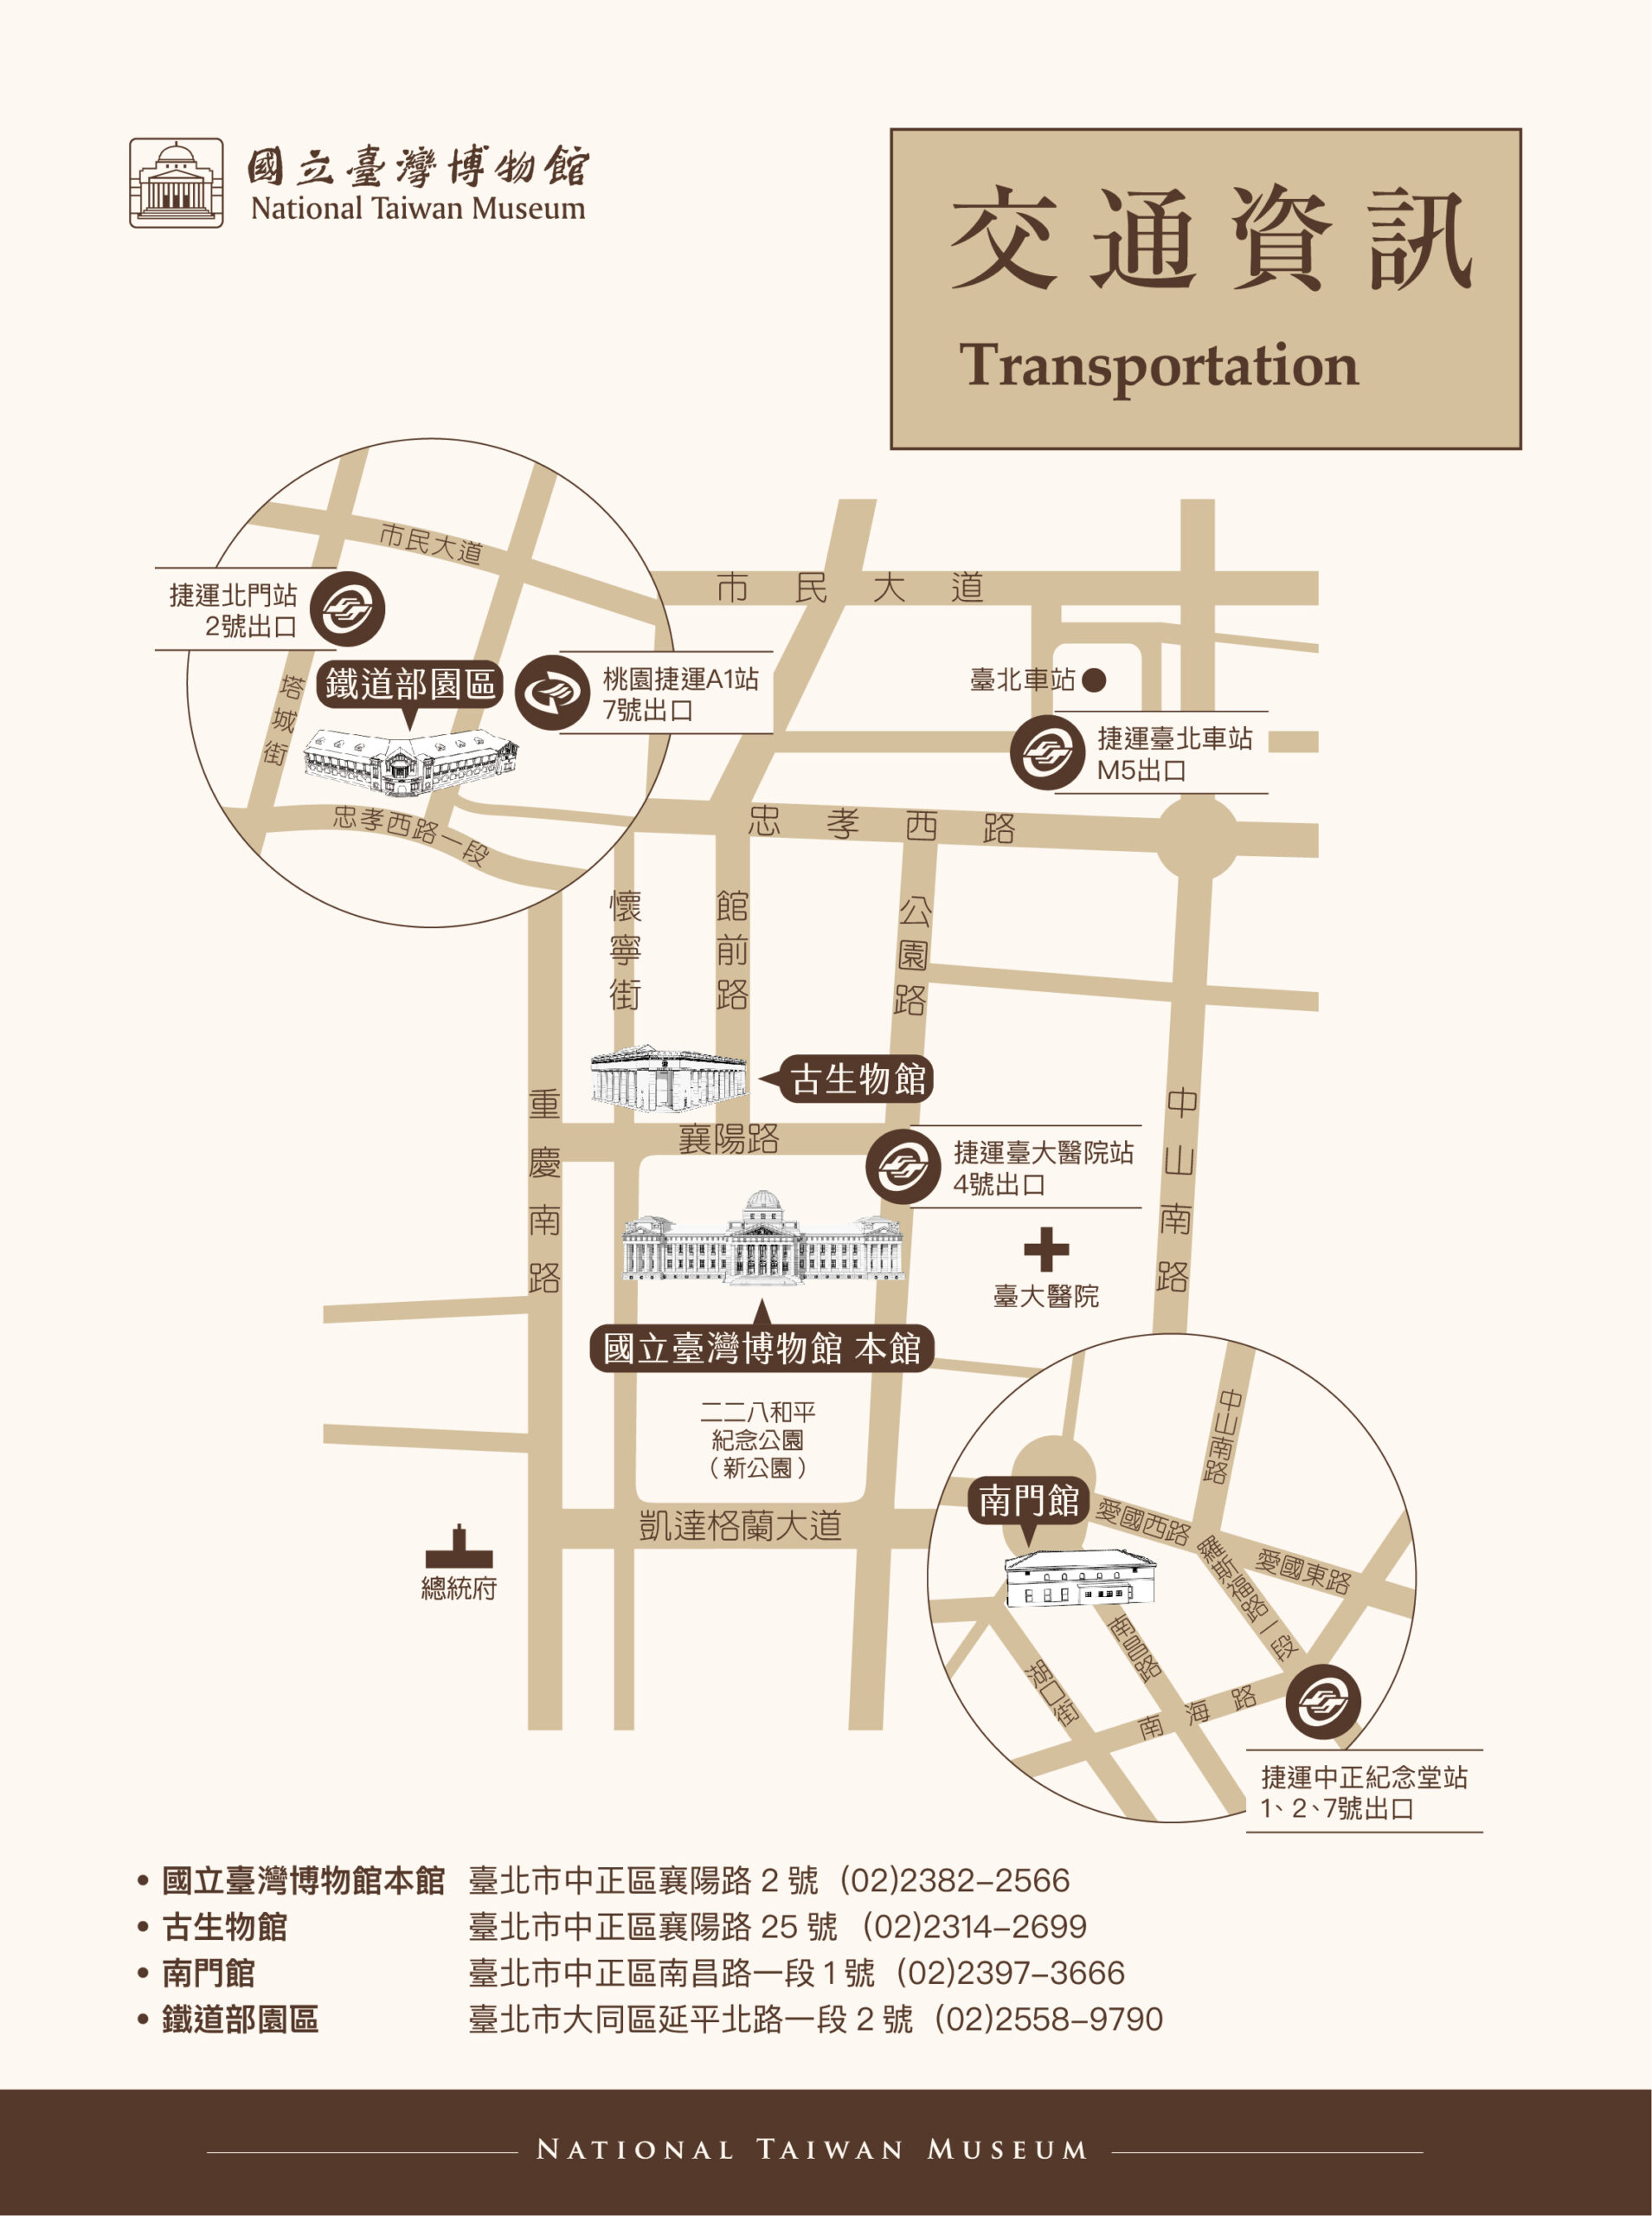 鐵道部園區,台北景點,親子景點,小火車,鐵道博物館,